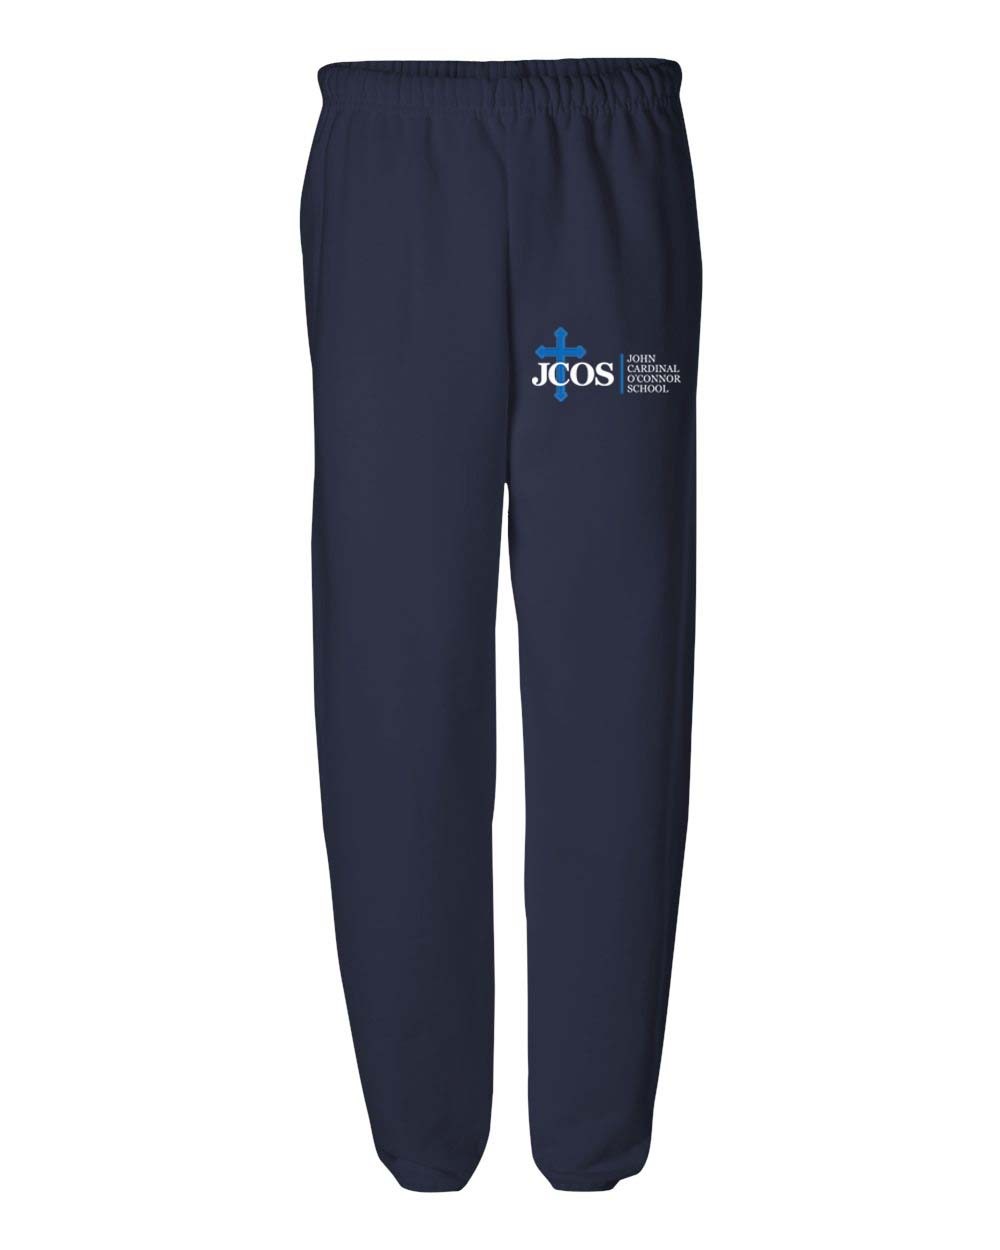 JCOS Gym Sweatpants w/ School Logo